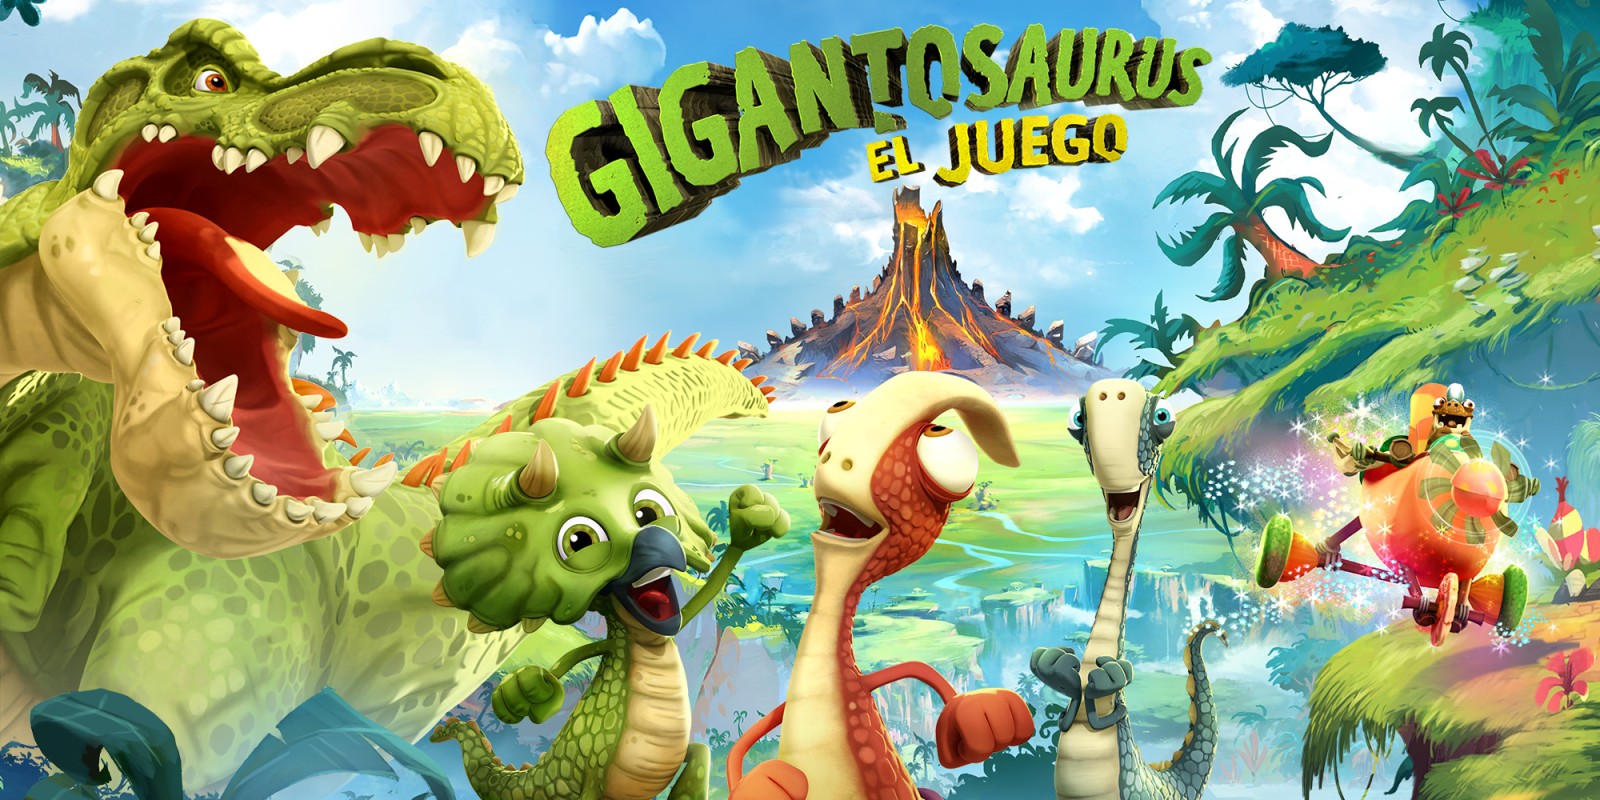 Gigantosaurus El Juego